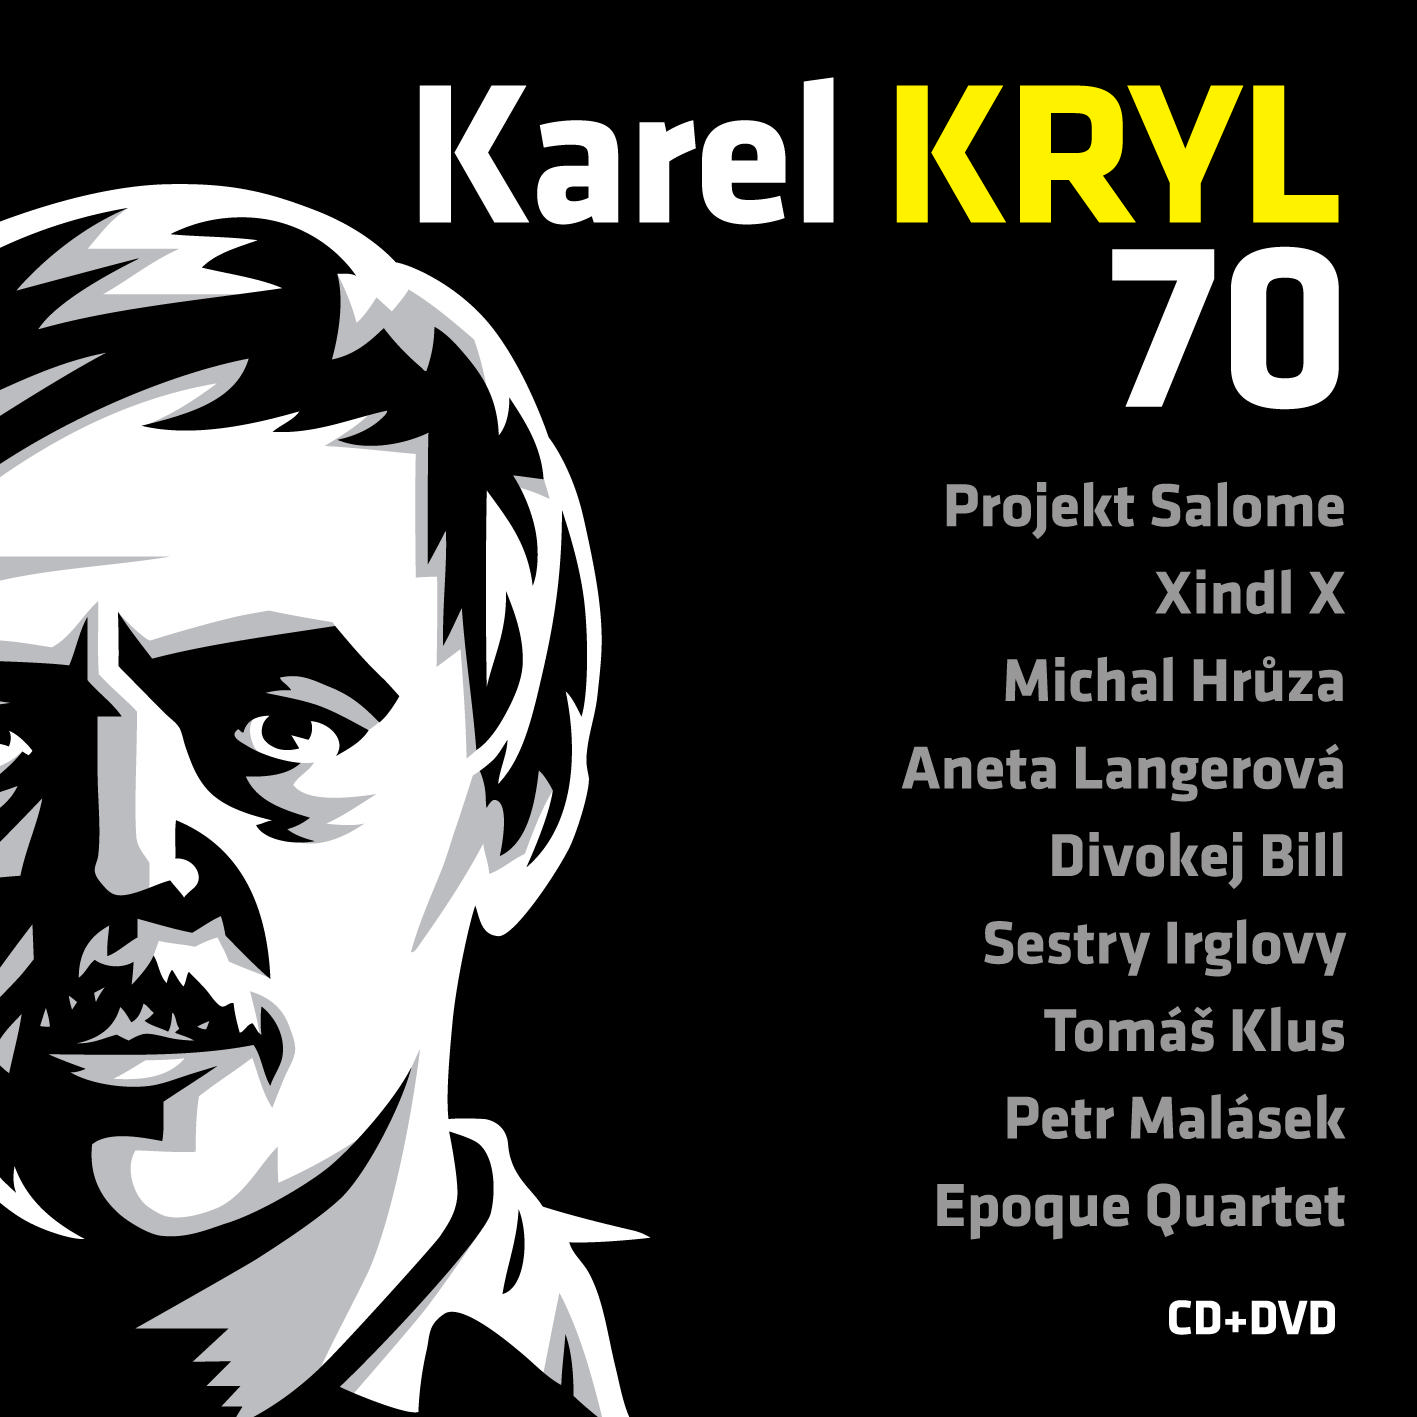 CD Shop - KRYL KAREL KAREL KRYL 70 - KONCERT - PRAZSKA LUCERNA